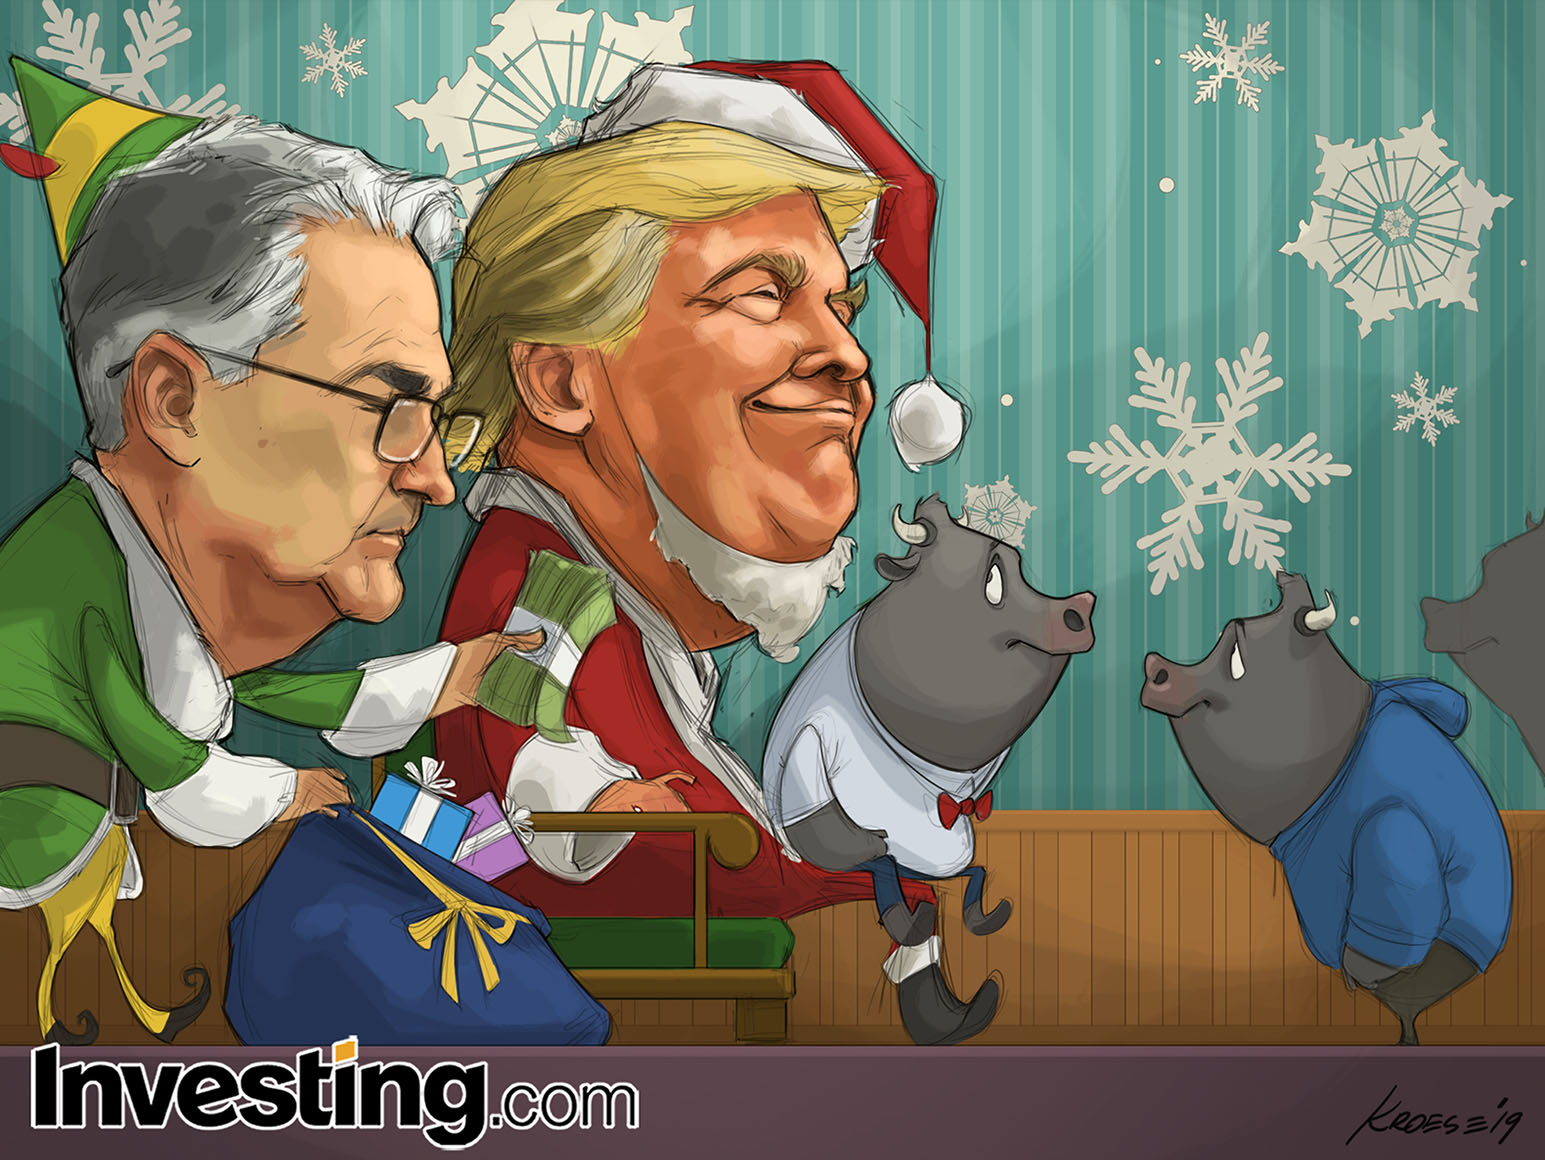 Investing.com deseja Feliz Natal e um Excelente 2020!